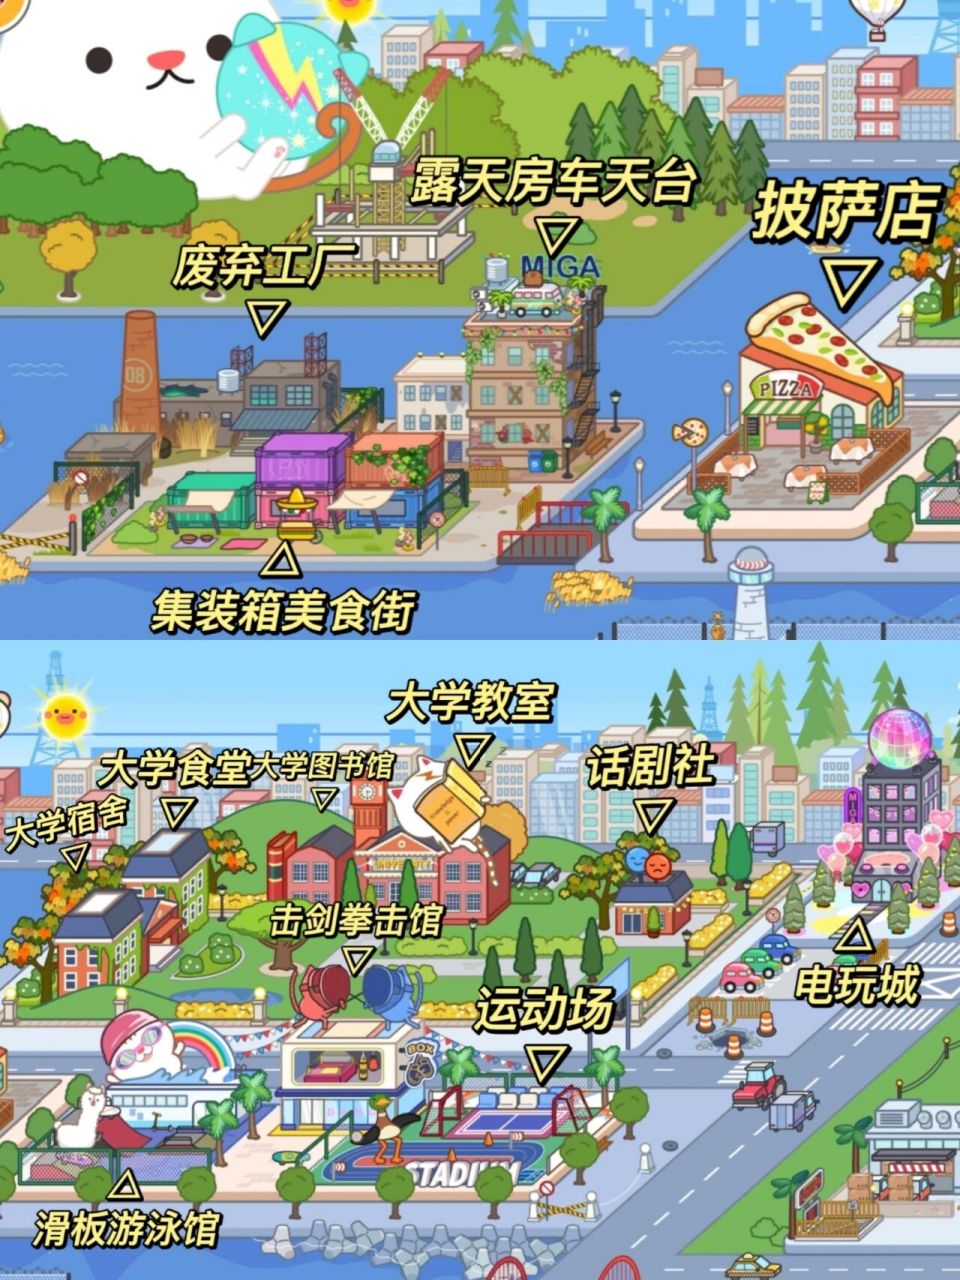 米加小镇更新全部地图图片